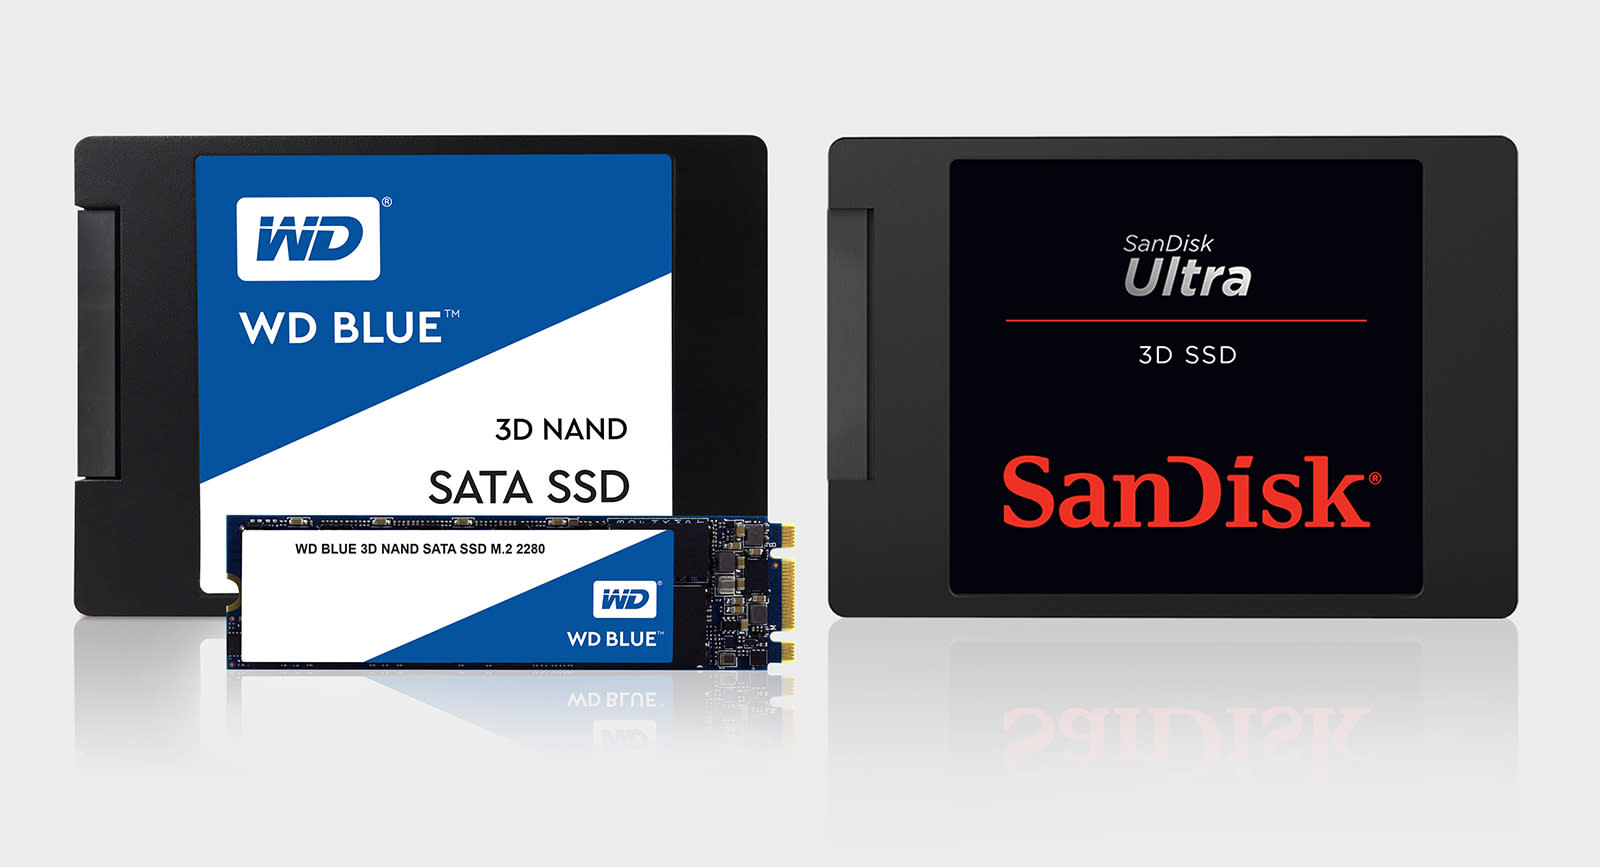 3d v nand. WD Blue SATA SSD. Ссд накопитель вестерн диджитал. Производители твердотельных накопителей. SANDISK SSD.